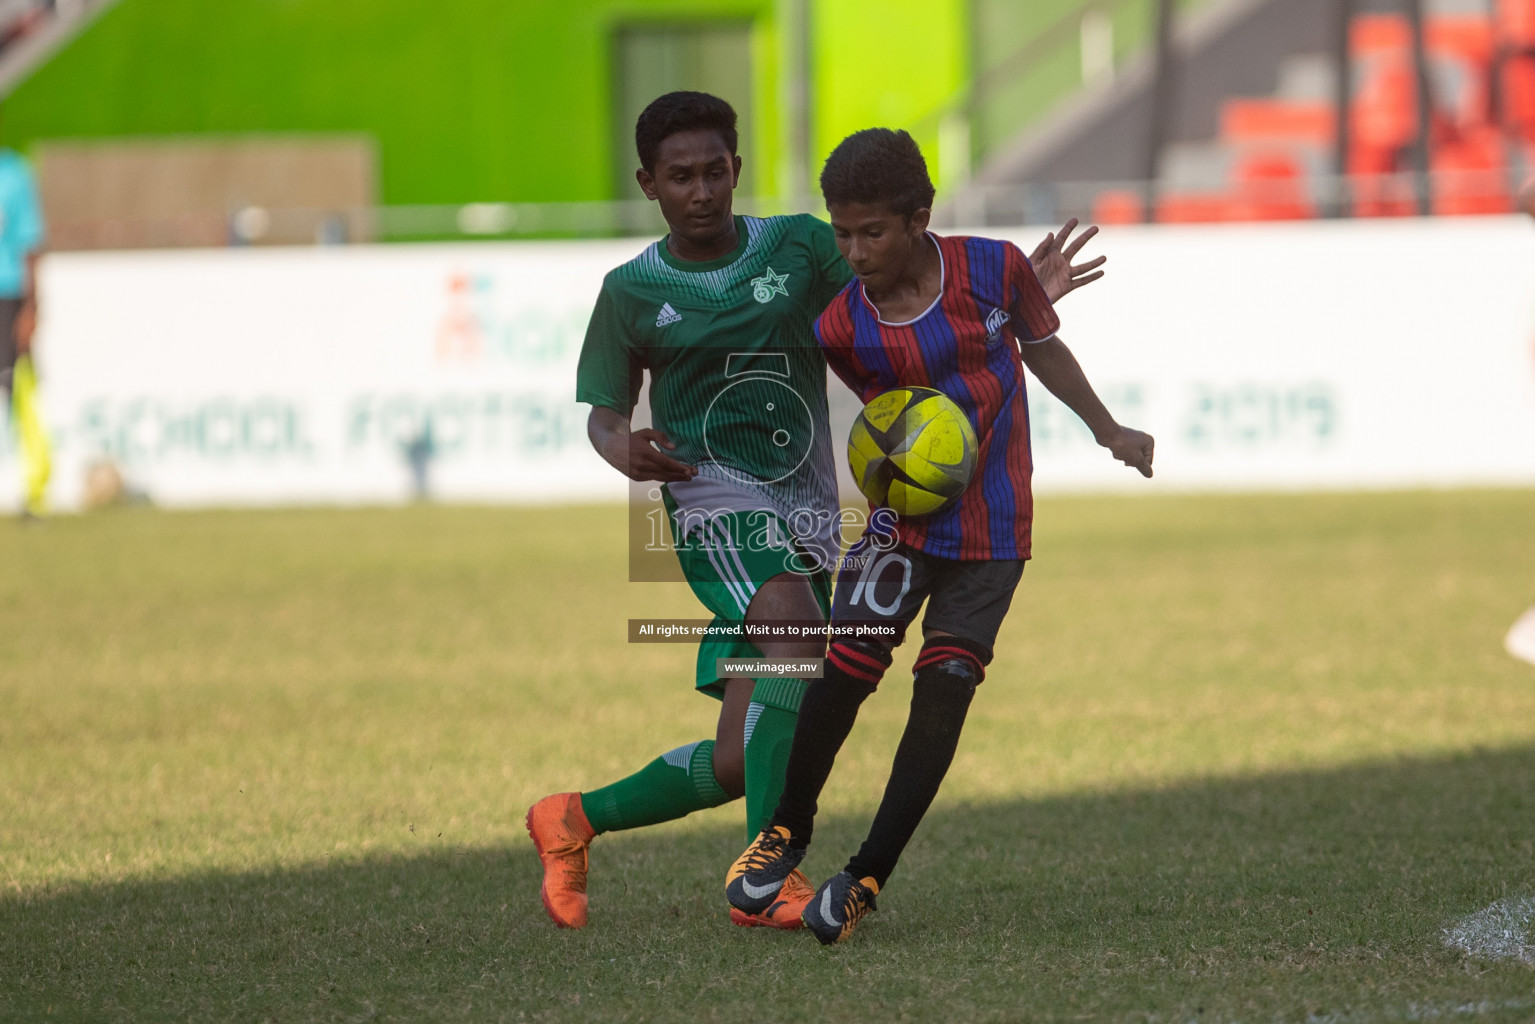 Muhyiddin School vs Aminiyya School in Mamen Inter-School Football Tournament 2019 (U15) on 9th March 2019, in Male' Maldives (Images.mv Photo: Suadh Abdul Sattar)